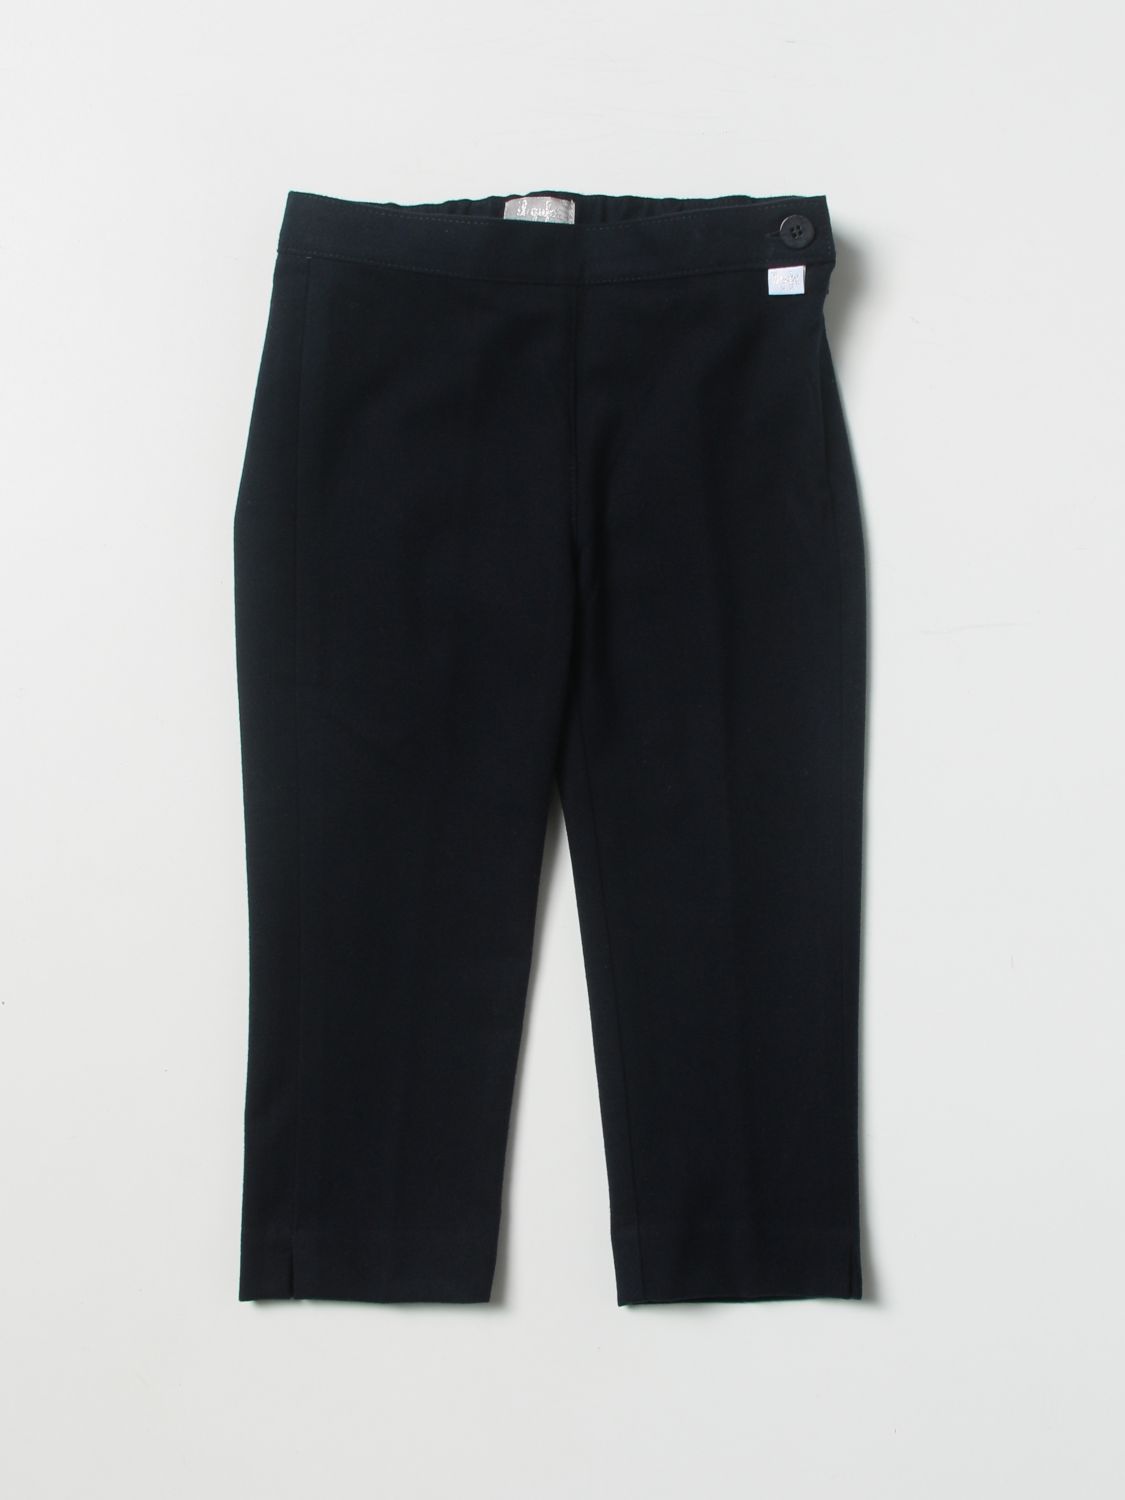 Pantalone in tessuto sintetico stretch Giglio.com Bambina Abbigliamento Pantaloni e jeans Pantaloni Pantaloni stretch 